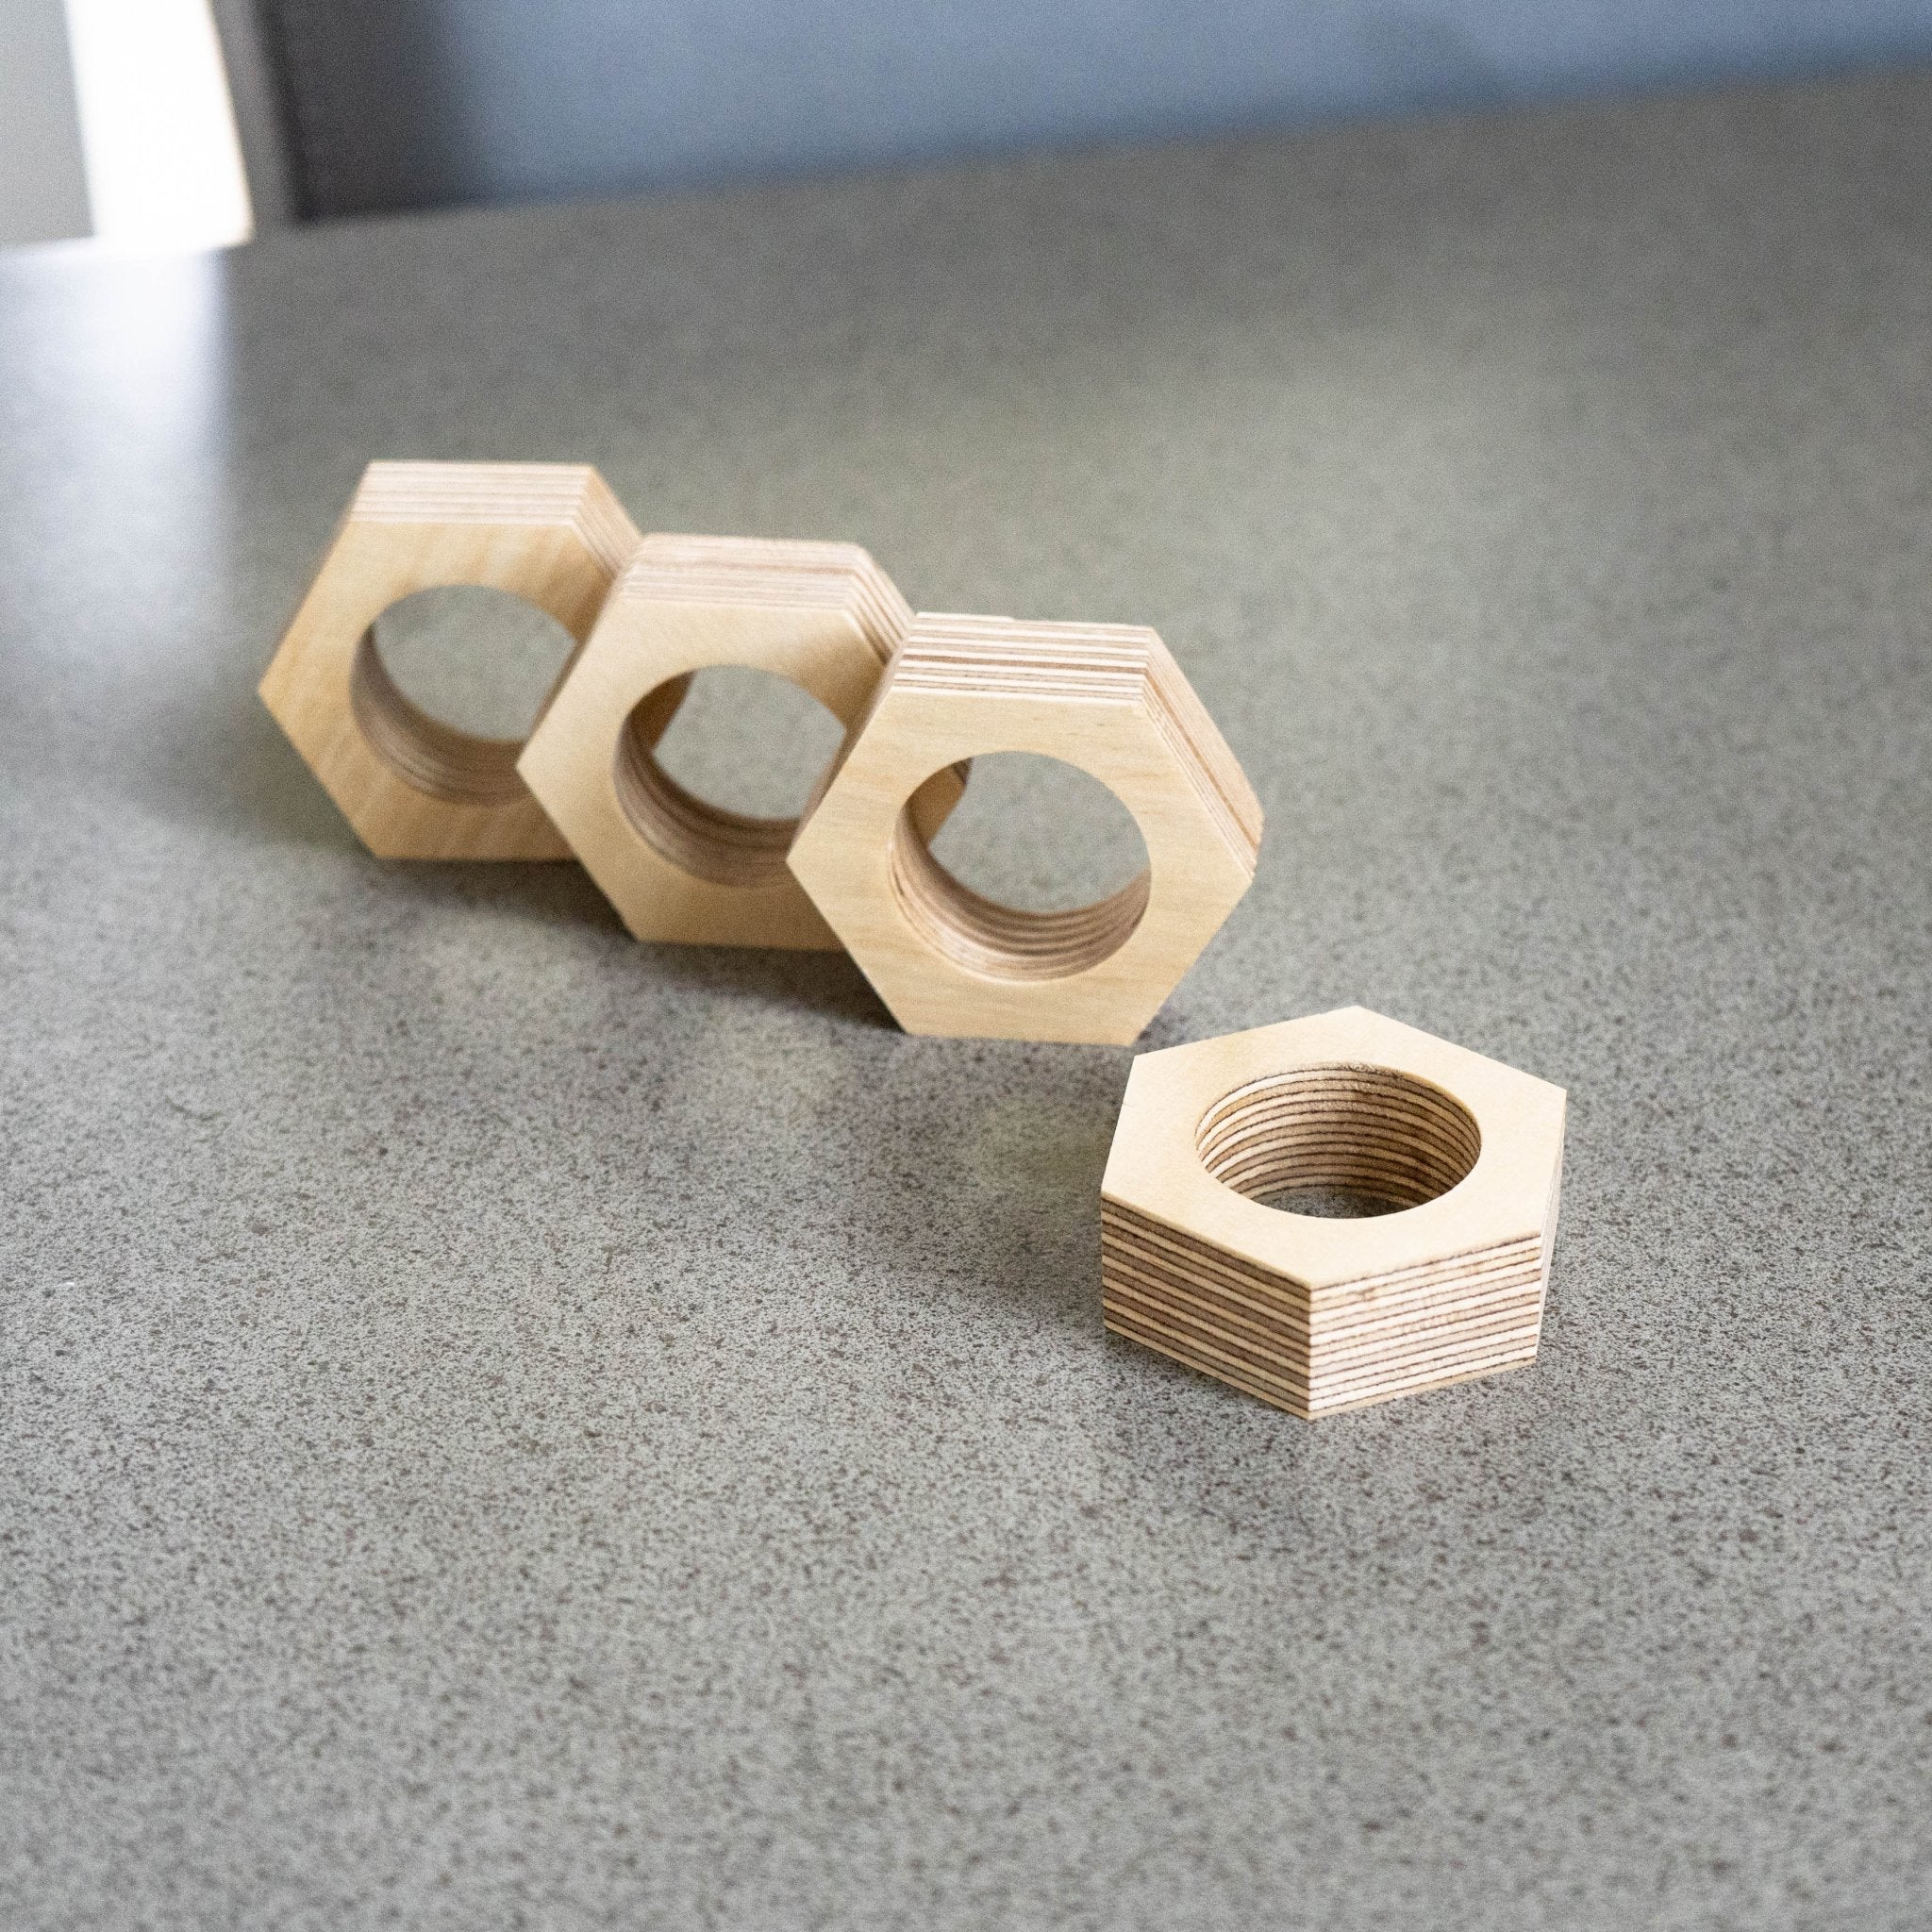 Easy DIY Wood Napkin Rings Made from Scrap 2 x 4 - Dream Design DIY